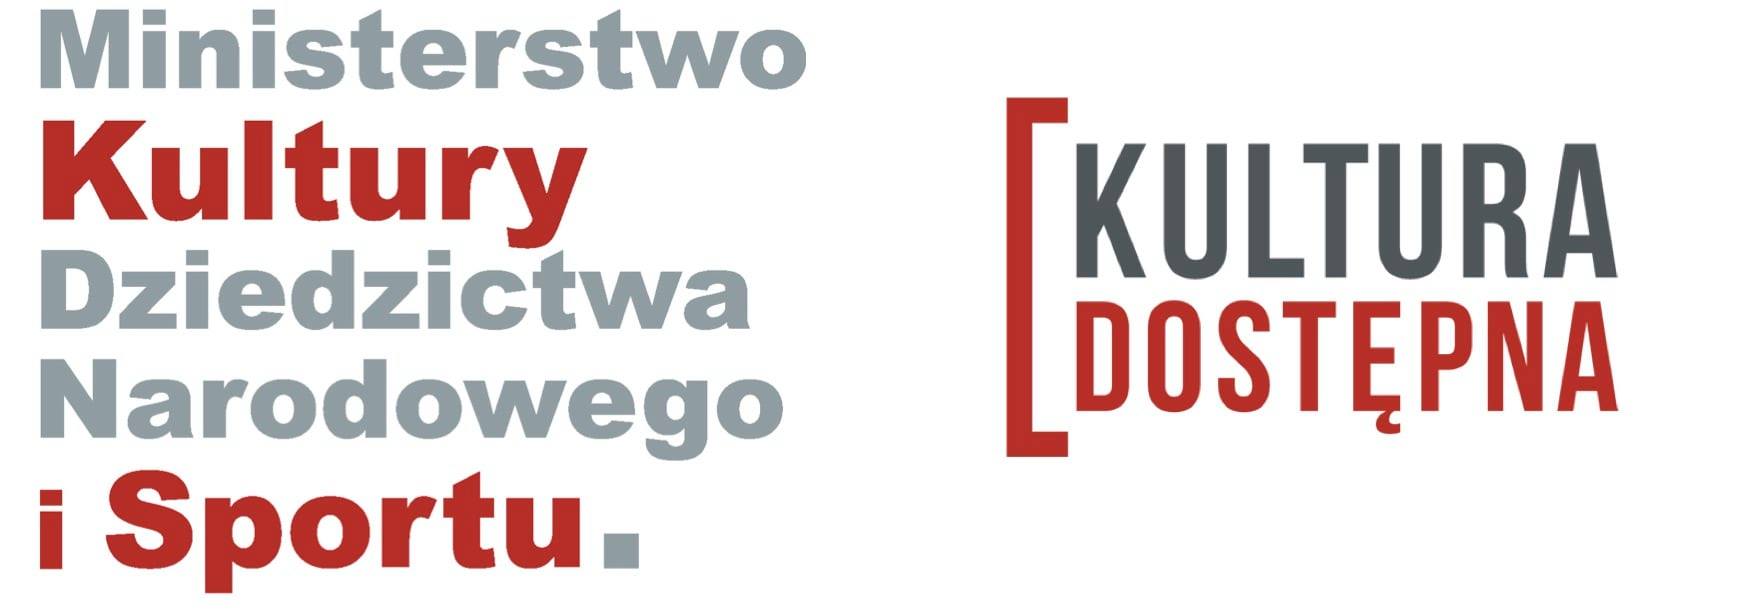 Grafika z dwoma logotypami. Logotyp Ministerstwa Kultury, Dziedzictwa narodowego i Sportu oraz logotyp Kultury Dostępnej. 